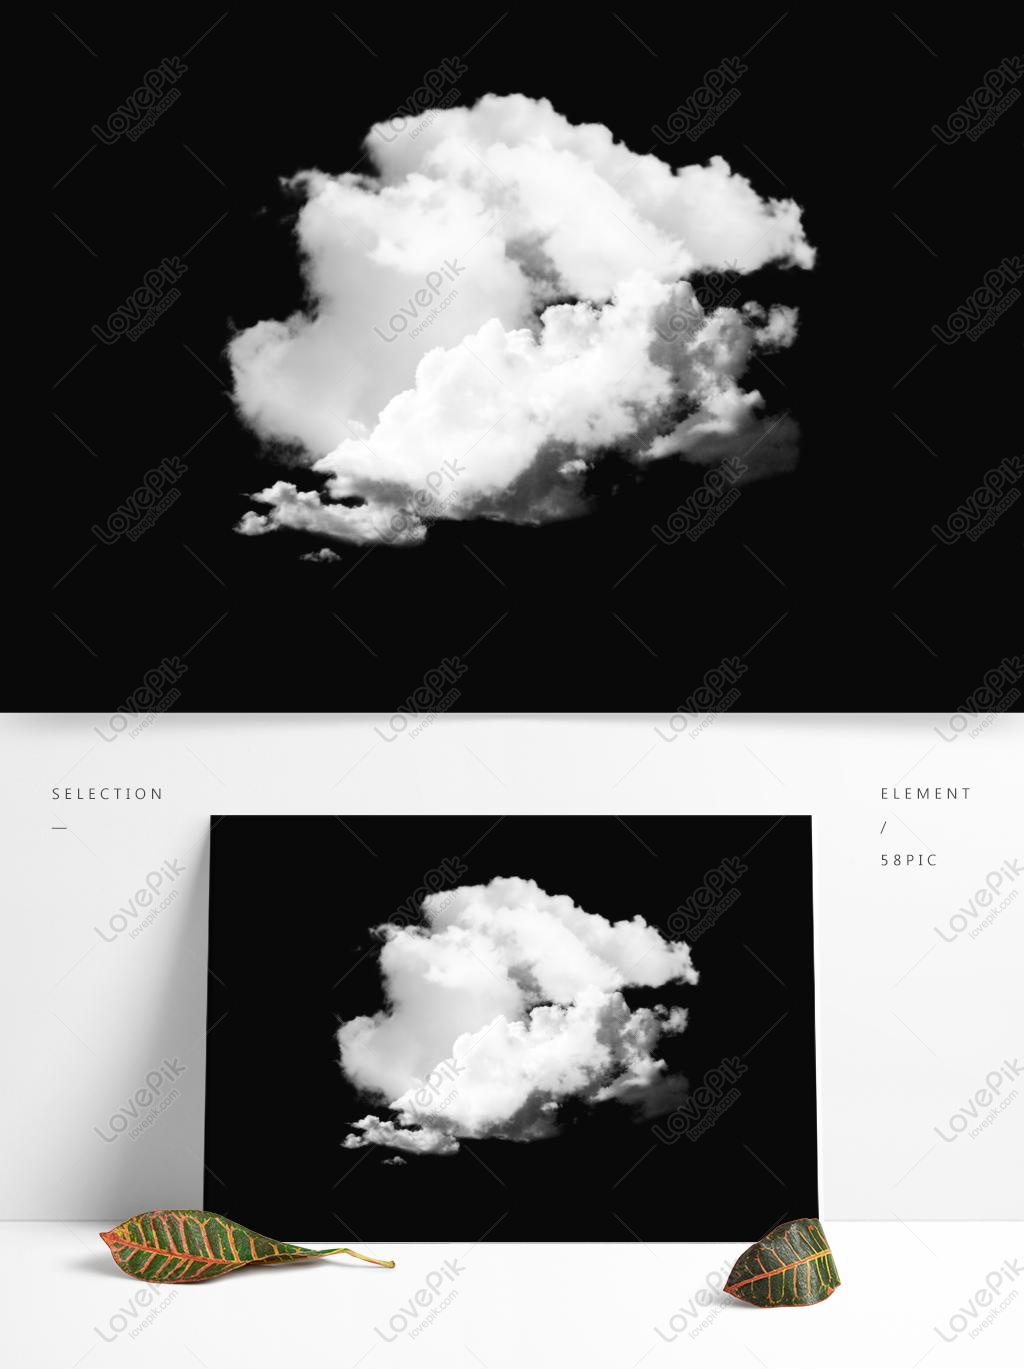 tangan dicat cat  air  awan putih  gambar unduh gratis 